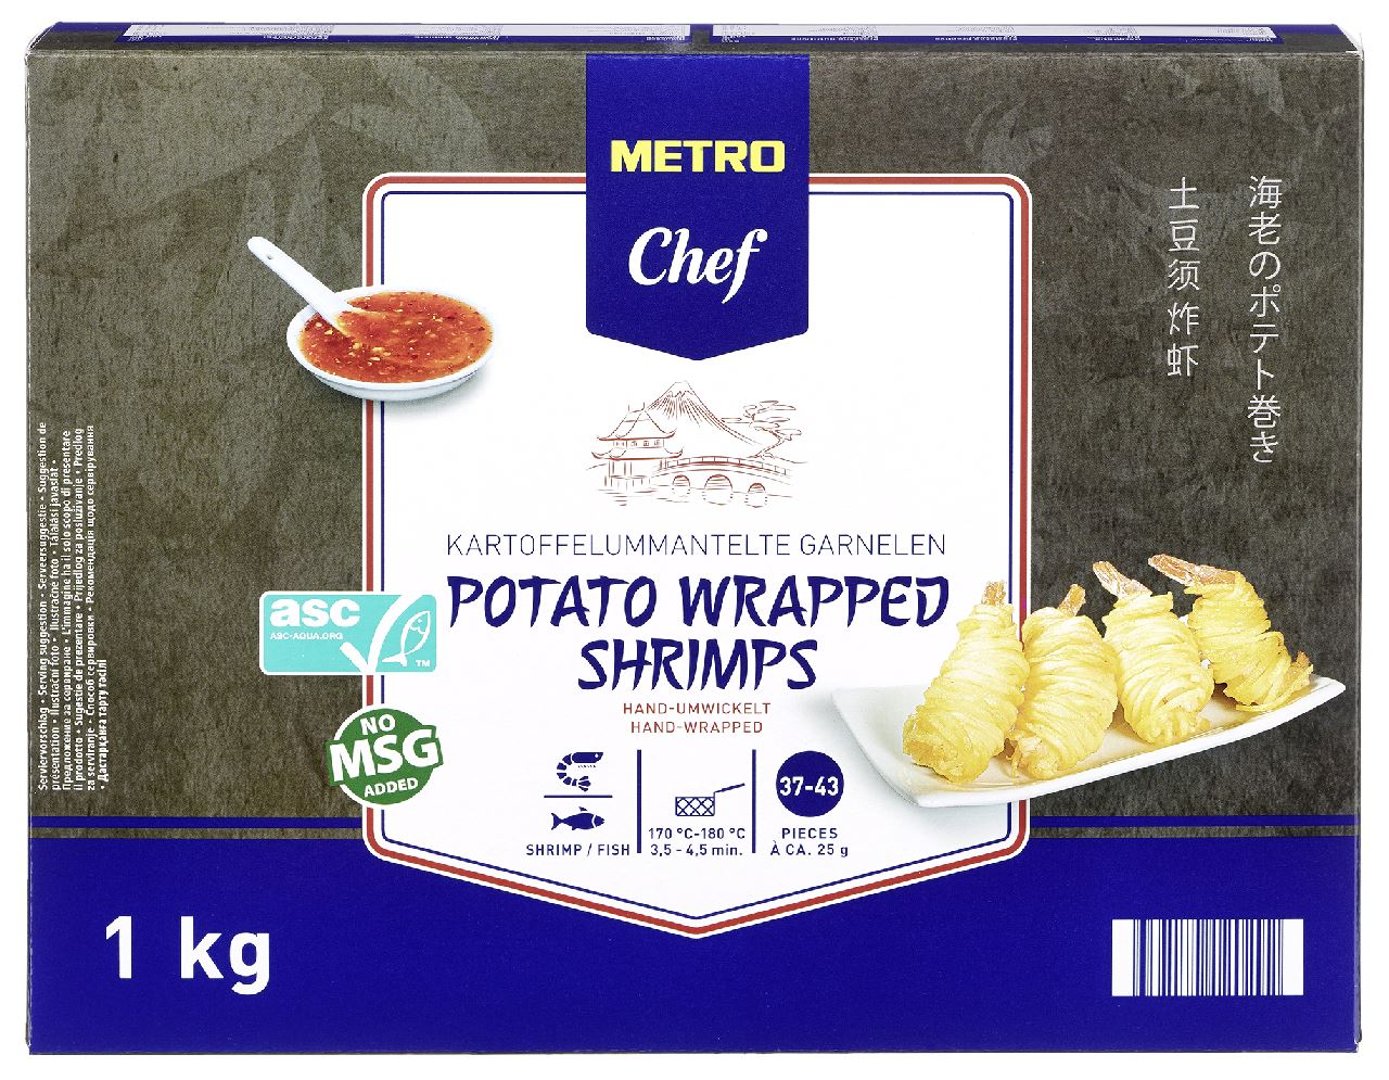 METRO Chef - Garnele im Kartoffelmantel tiefgefroren - 1 kg Packung